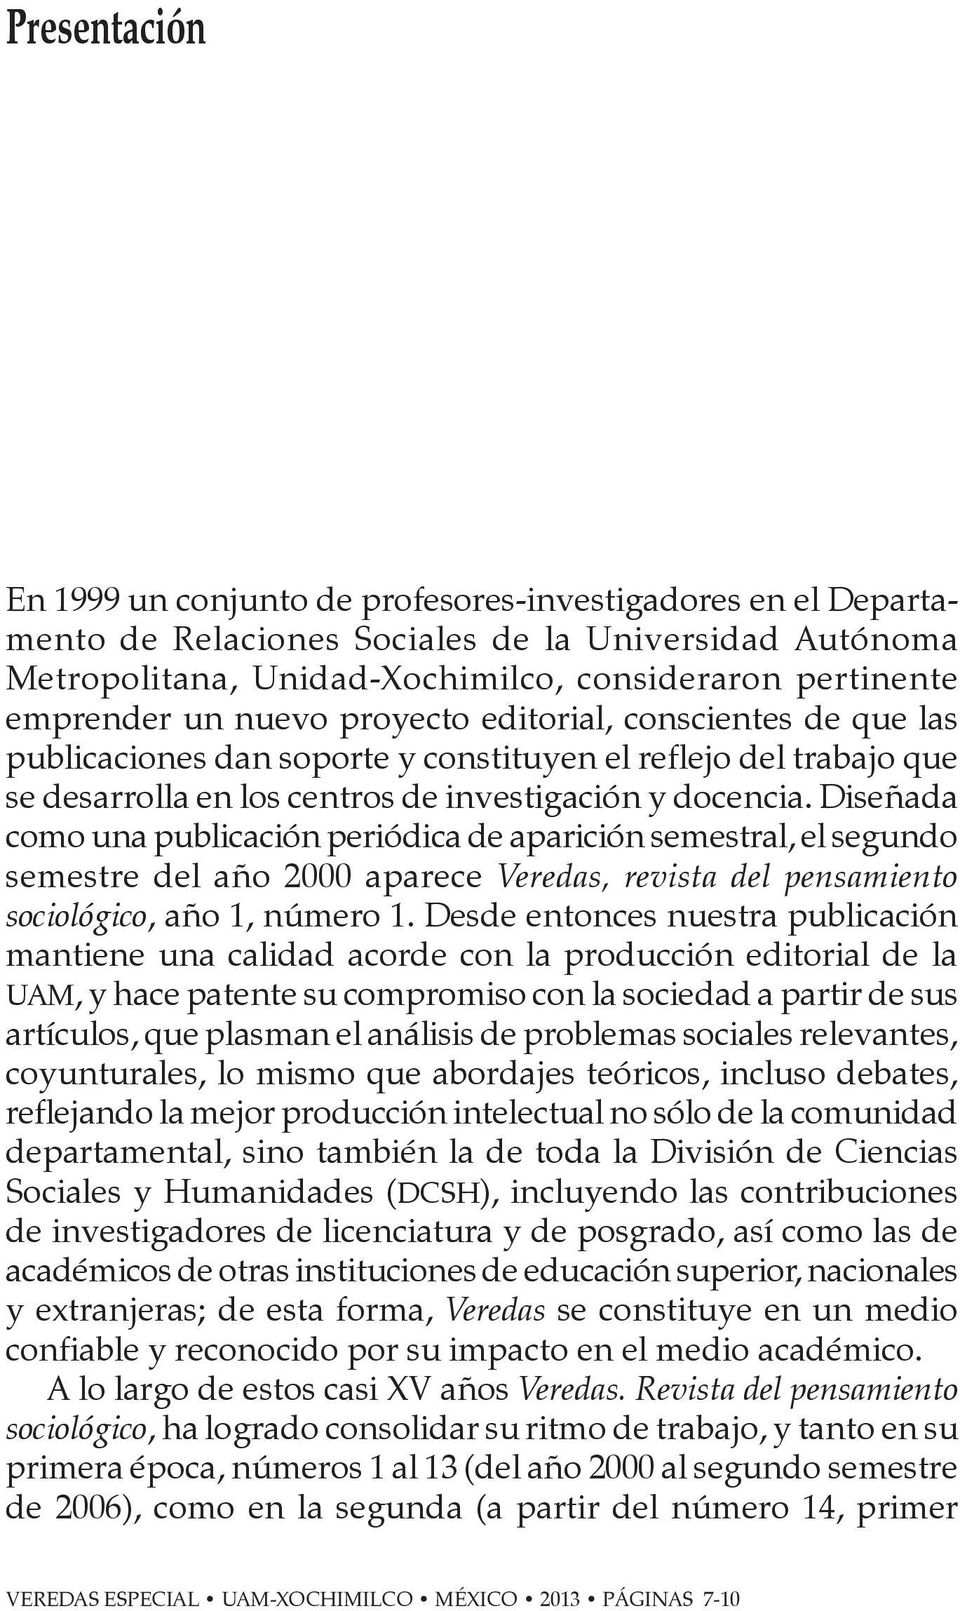 Diseñada como una publicación periódica de aparición semestral, el segundo semestre del año 2000 aparece Veredas, revista del pensamiento sociológico, año 1, número 1.